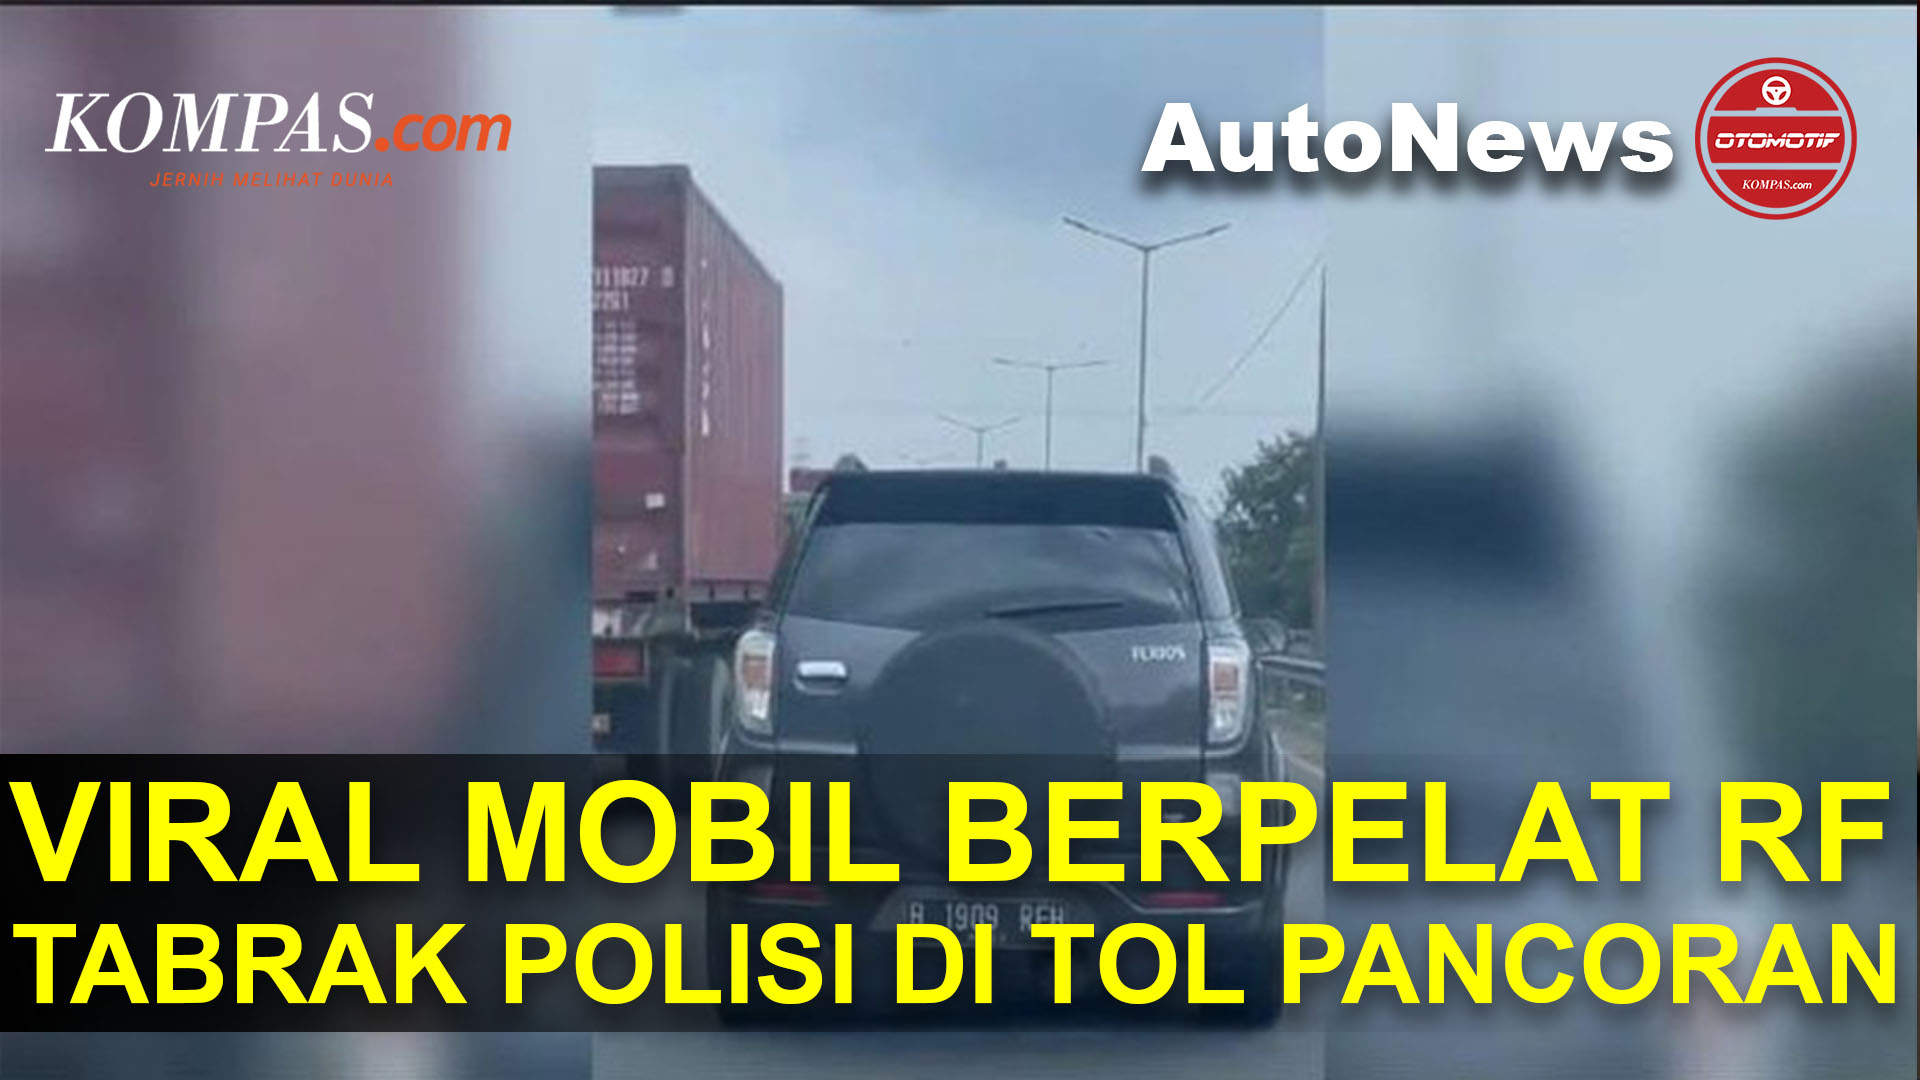 Pengemudi Mobil Berpelat RF Tabrak Polisi di Tol Pancoran Viral di Media Sosial